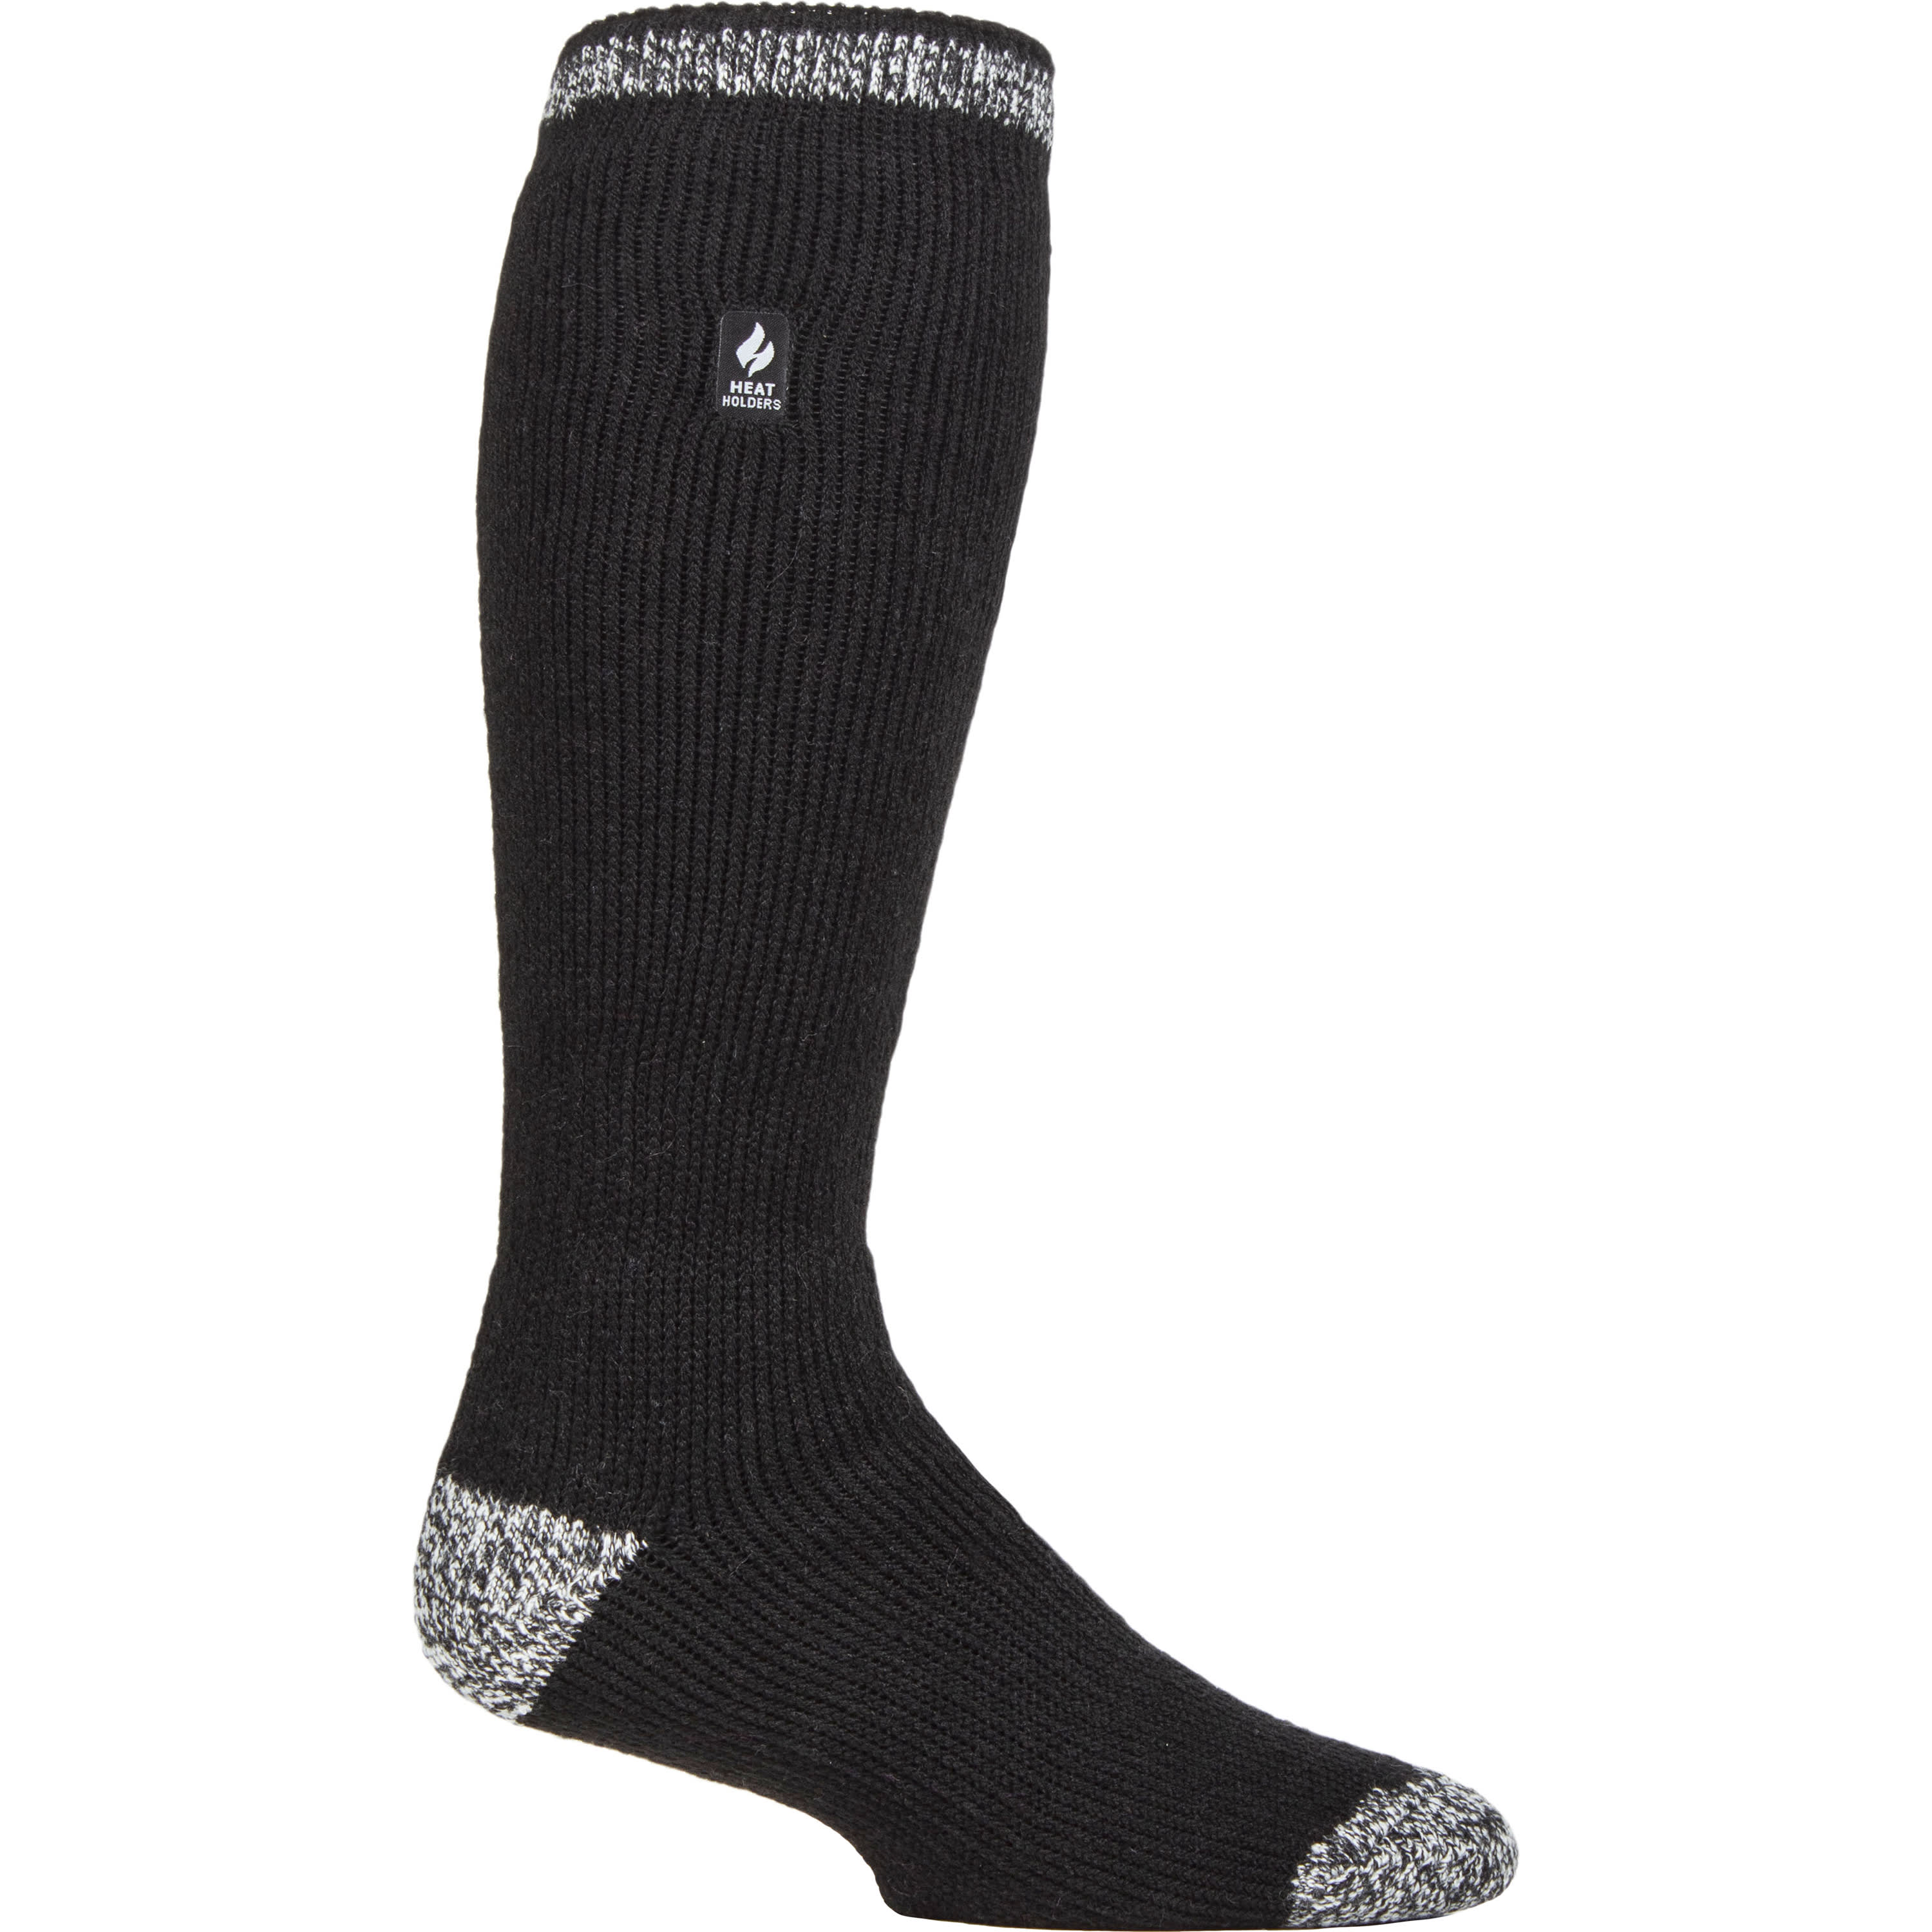 Heat Holders® Men’s Long Twist Socks